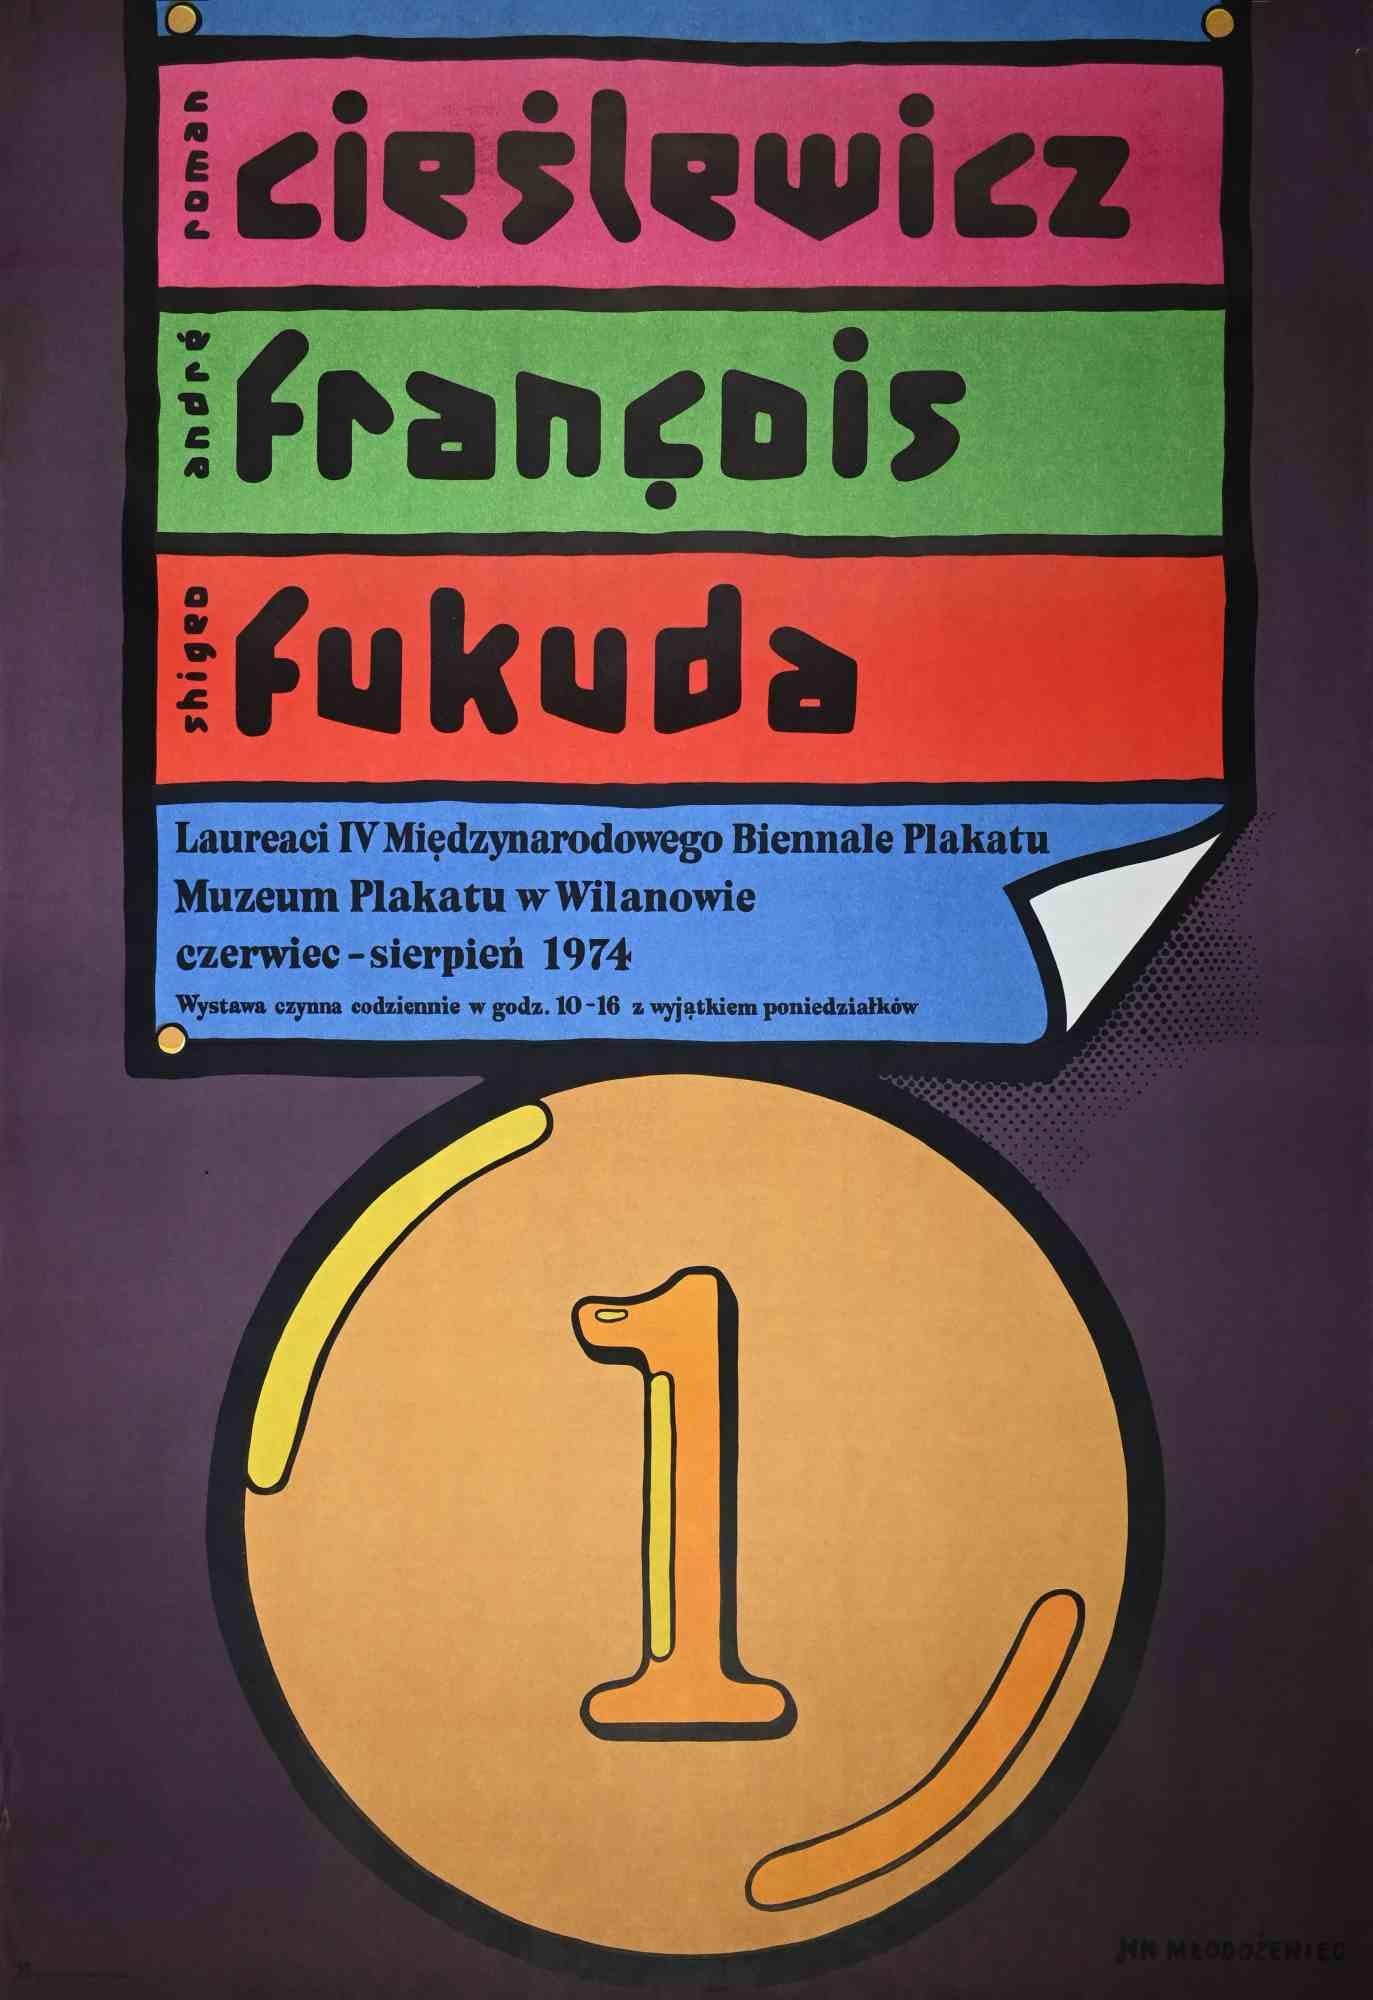 Jan Mlodozeniec Print - Vintage Poster of the Biennale Plakatu - Lithograph by Mlodozeniec - 1974